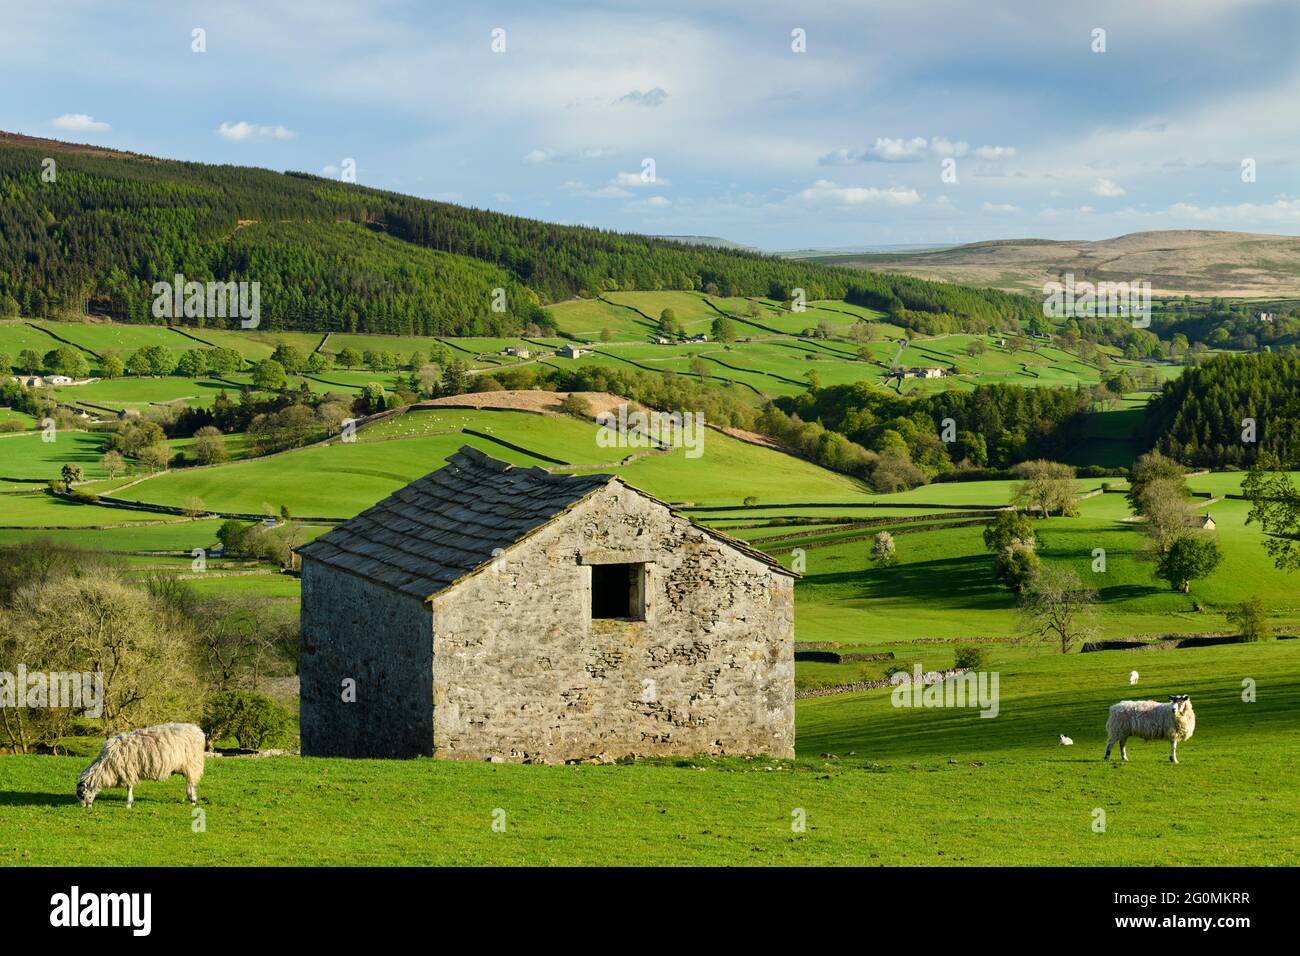 Scenic Wharfedale Countryside (valle, colline, fienile rustico isolato campo, pareti a secco, pascoli verdi terreni agricoli) - Yorkshire Dales, Inghilterra, Regno Unito. Foto Stock